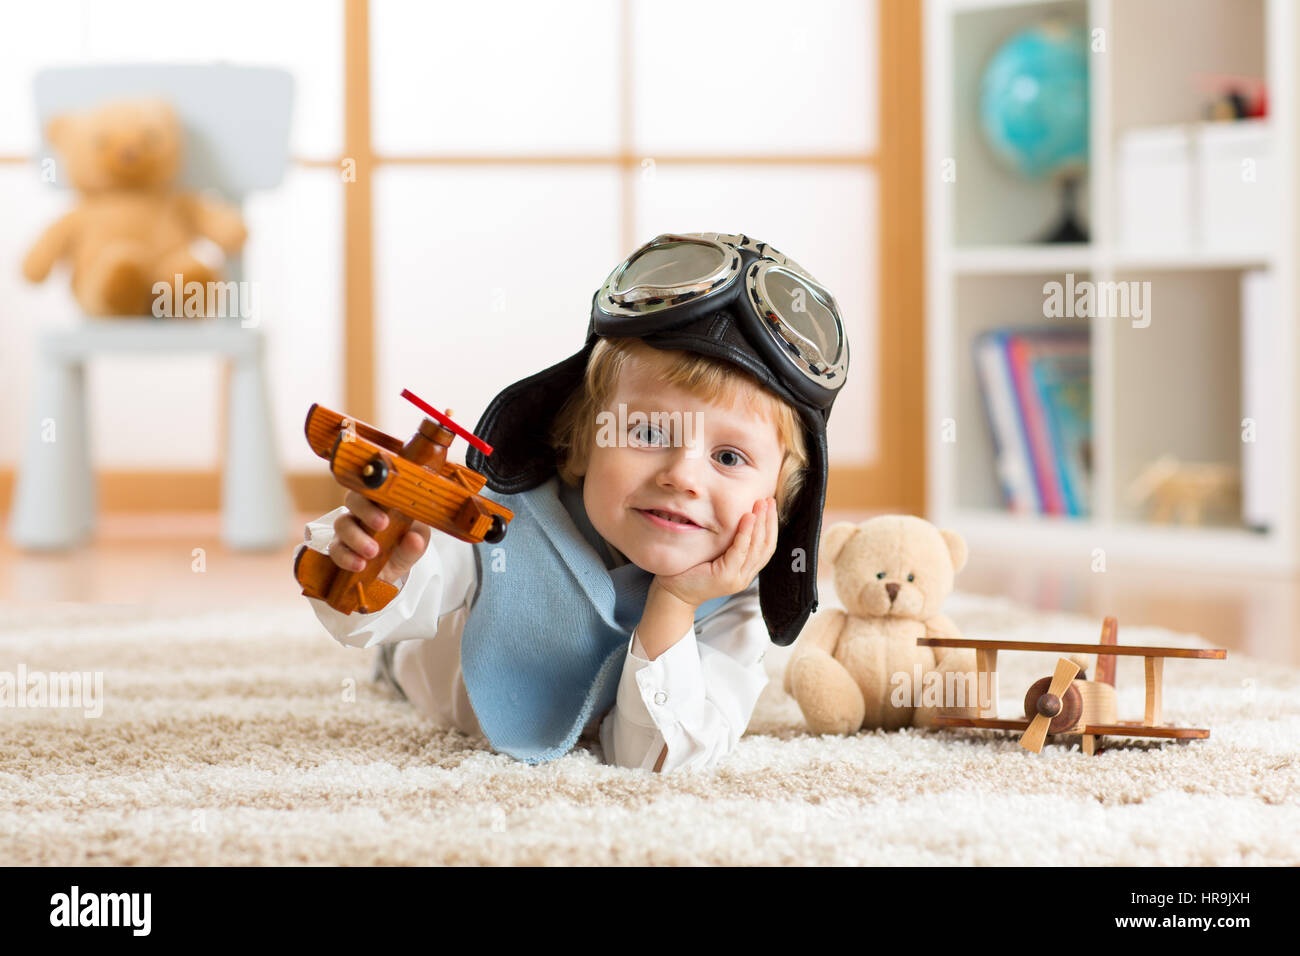 Portrait de petit Garçon jouant avec un avion en bois Banque D'Images